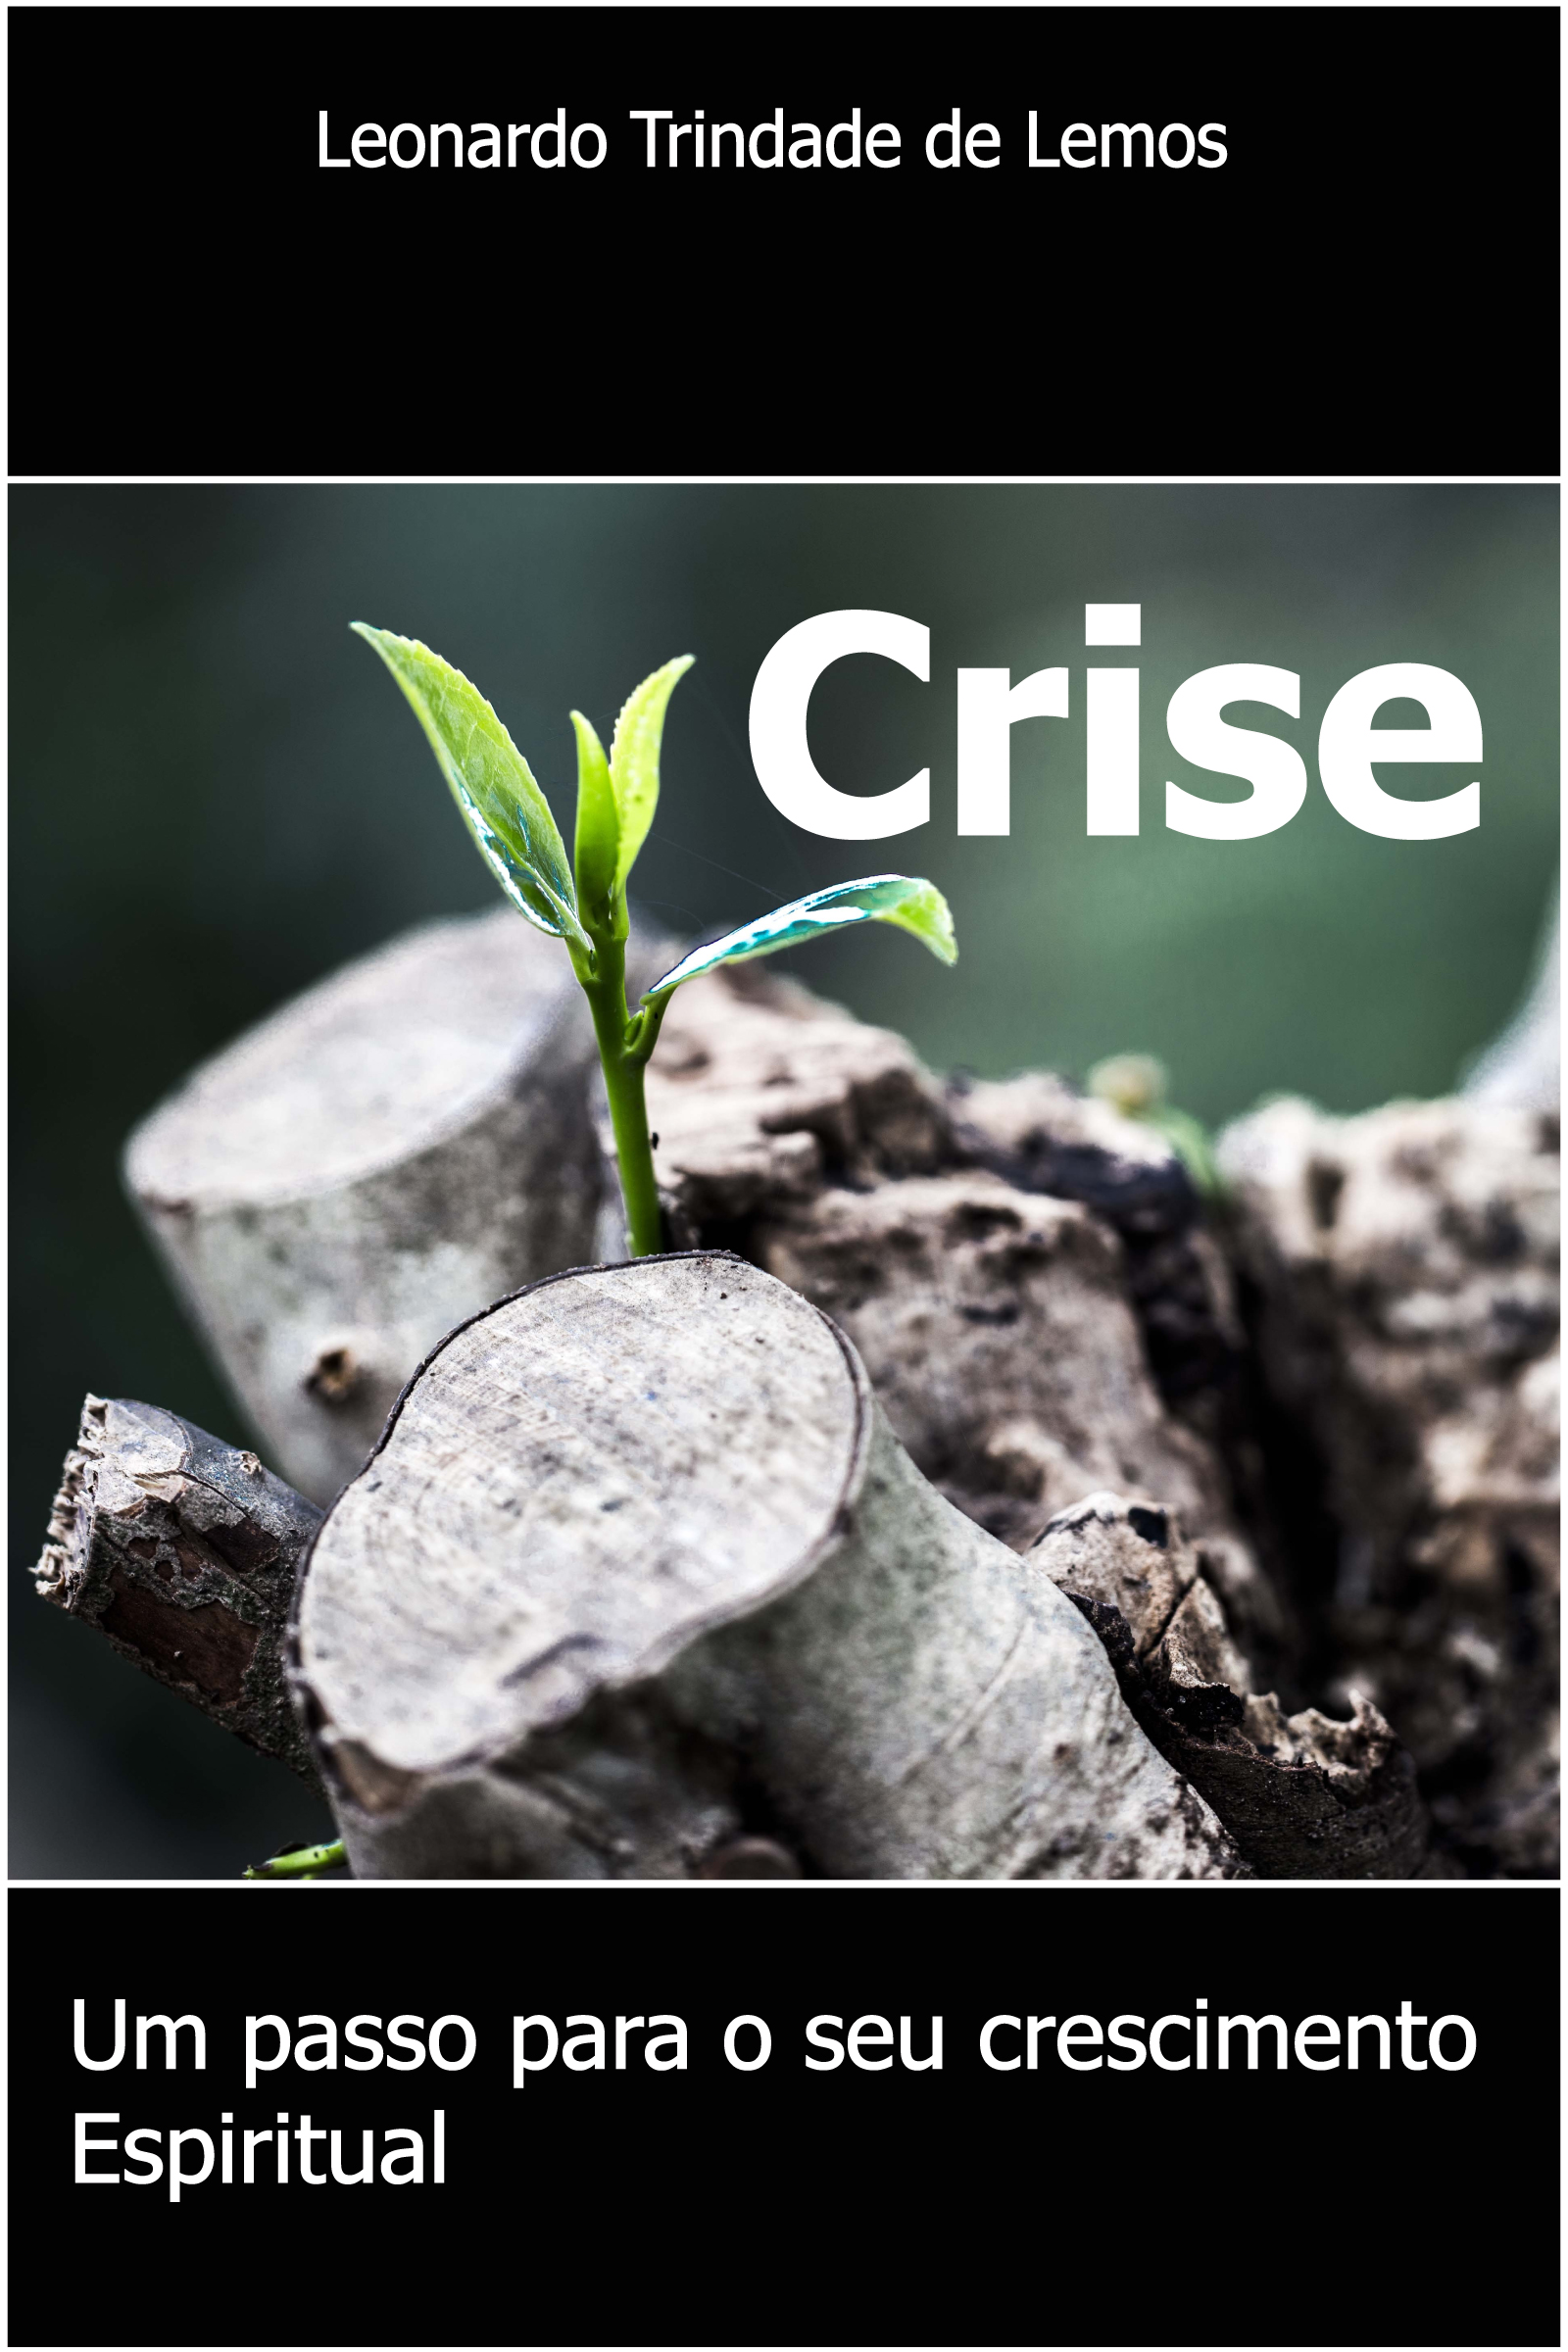 Crise, um passo para o seu crescimento espiritual